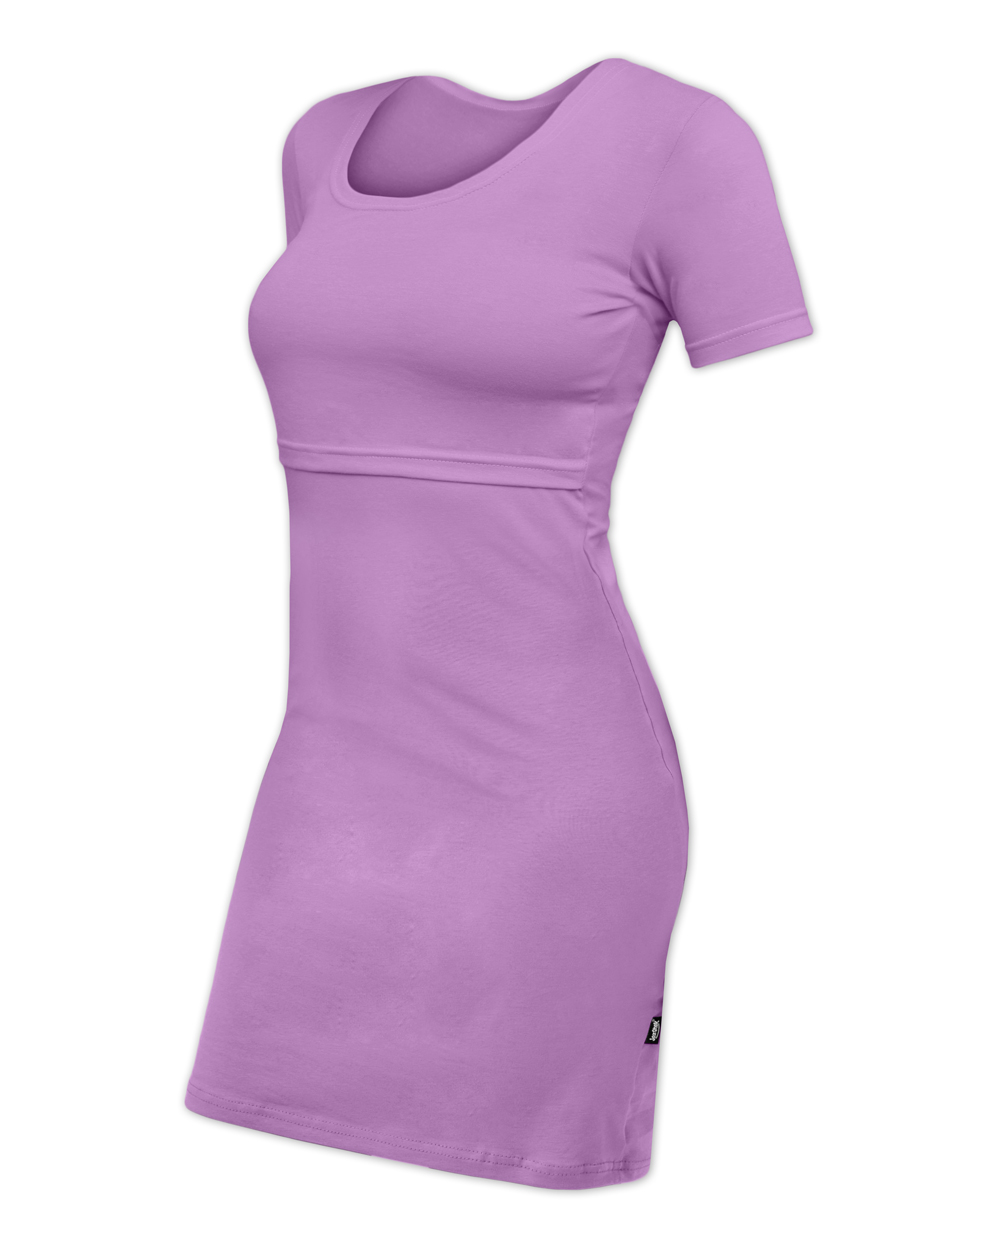 Kojicí šaty ELENA, krátký rukáv, levandulově fialové